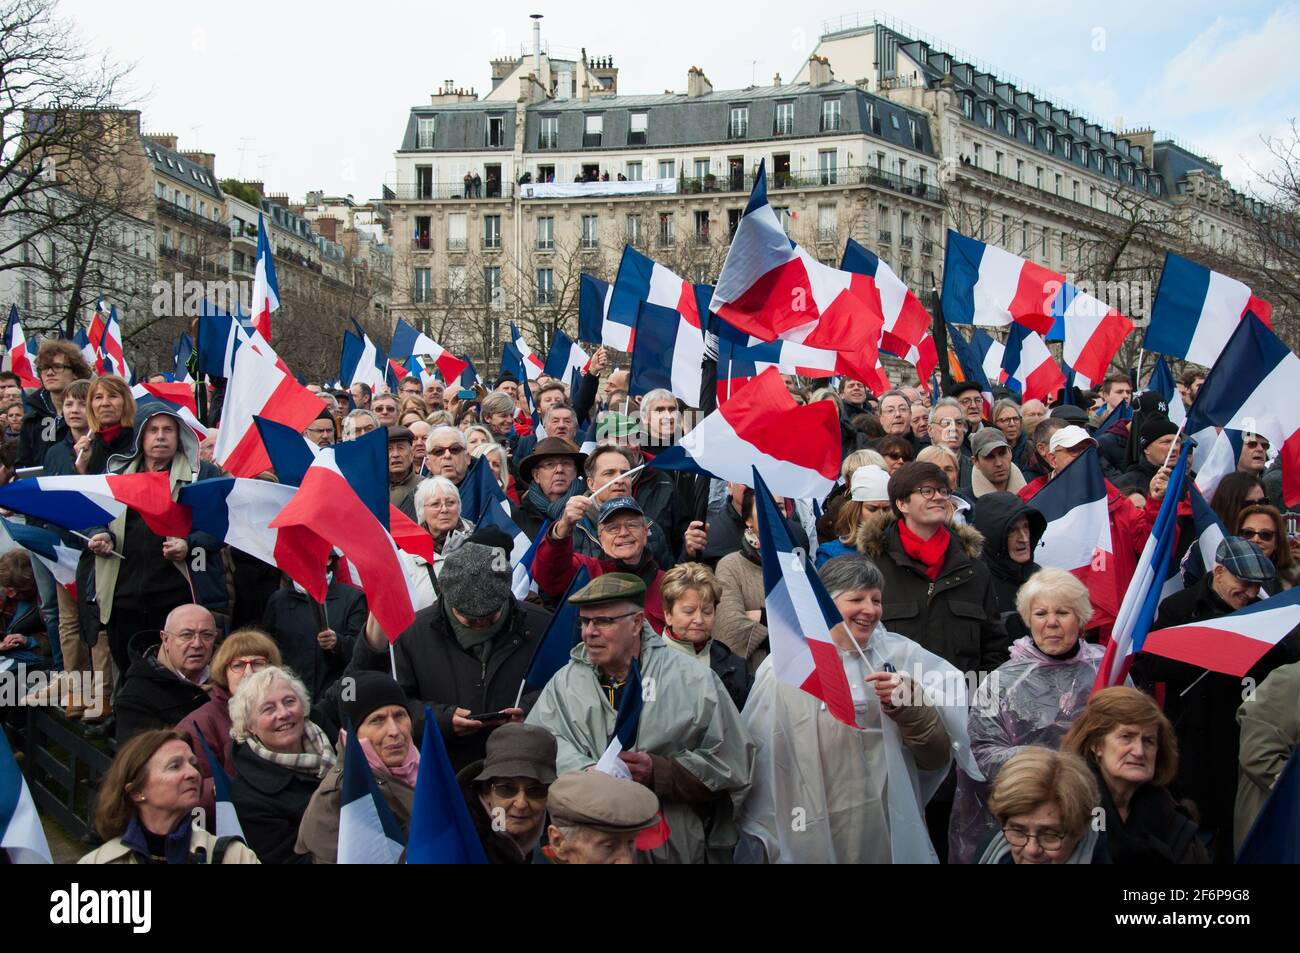 PARIGI, FRANCIA - 5 MARZO 2017 : Rally per sostenere la presidenza francese candidato di destra François Fillon al Trocadero. Foto Stock